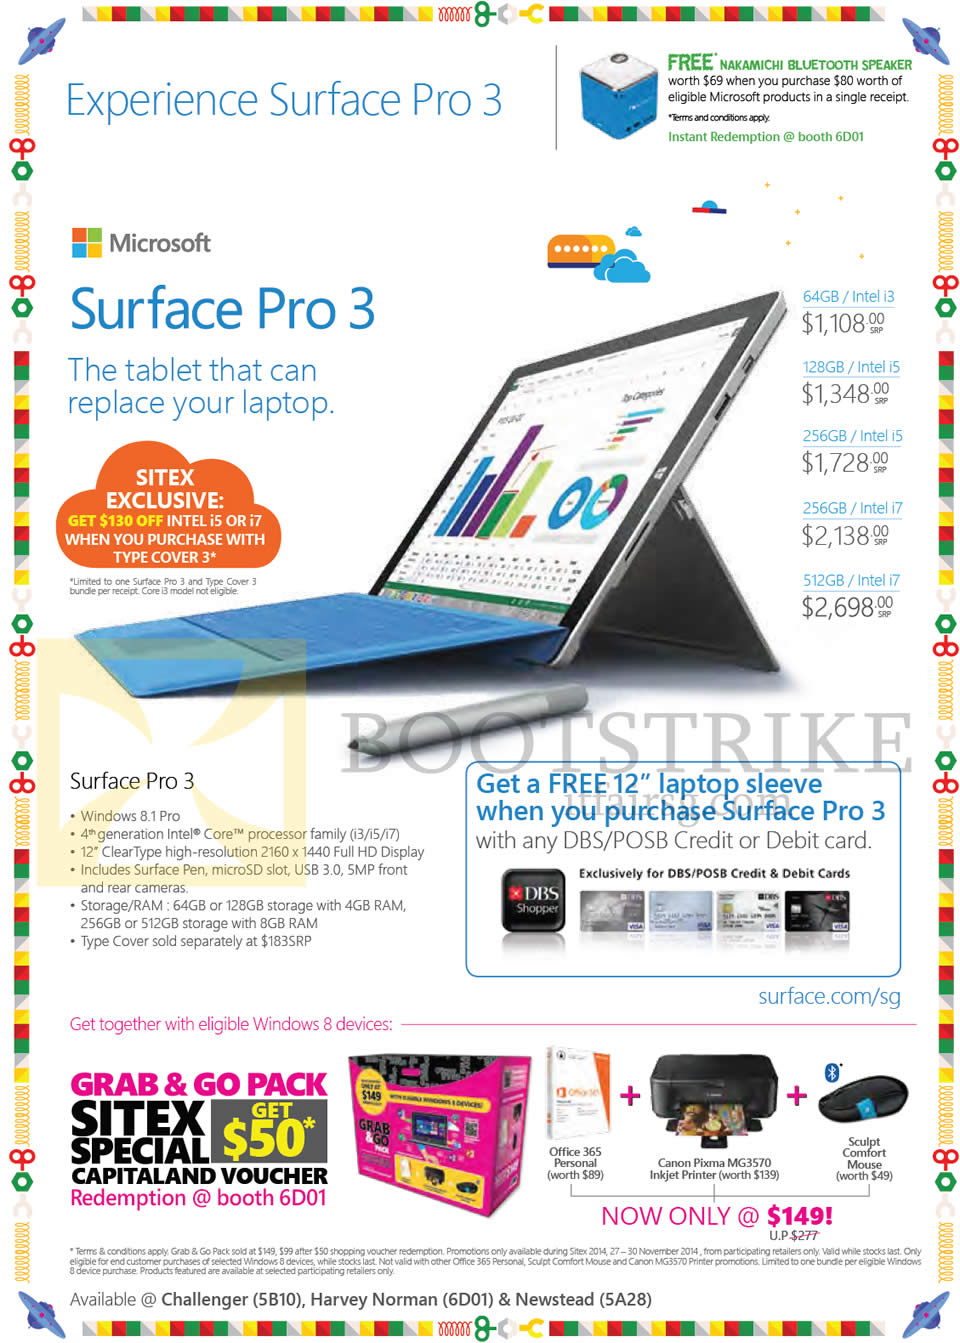 SITEX 2014 price list image brochure of Microsoft Surface Pro 3 Tablet, DBS POSB Free Laptop Sleeve, Grab N Go Pack